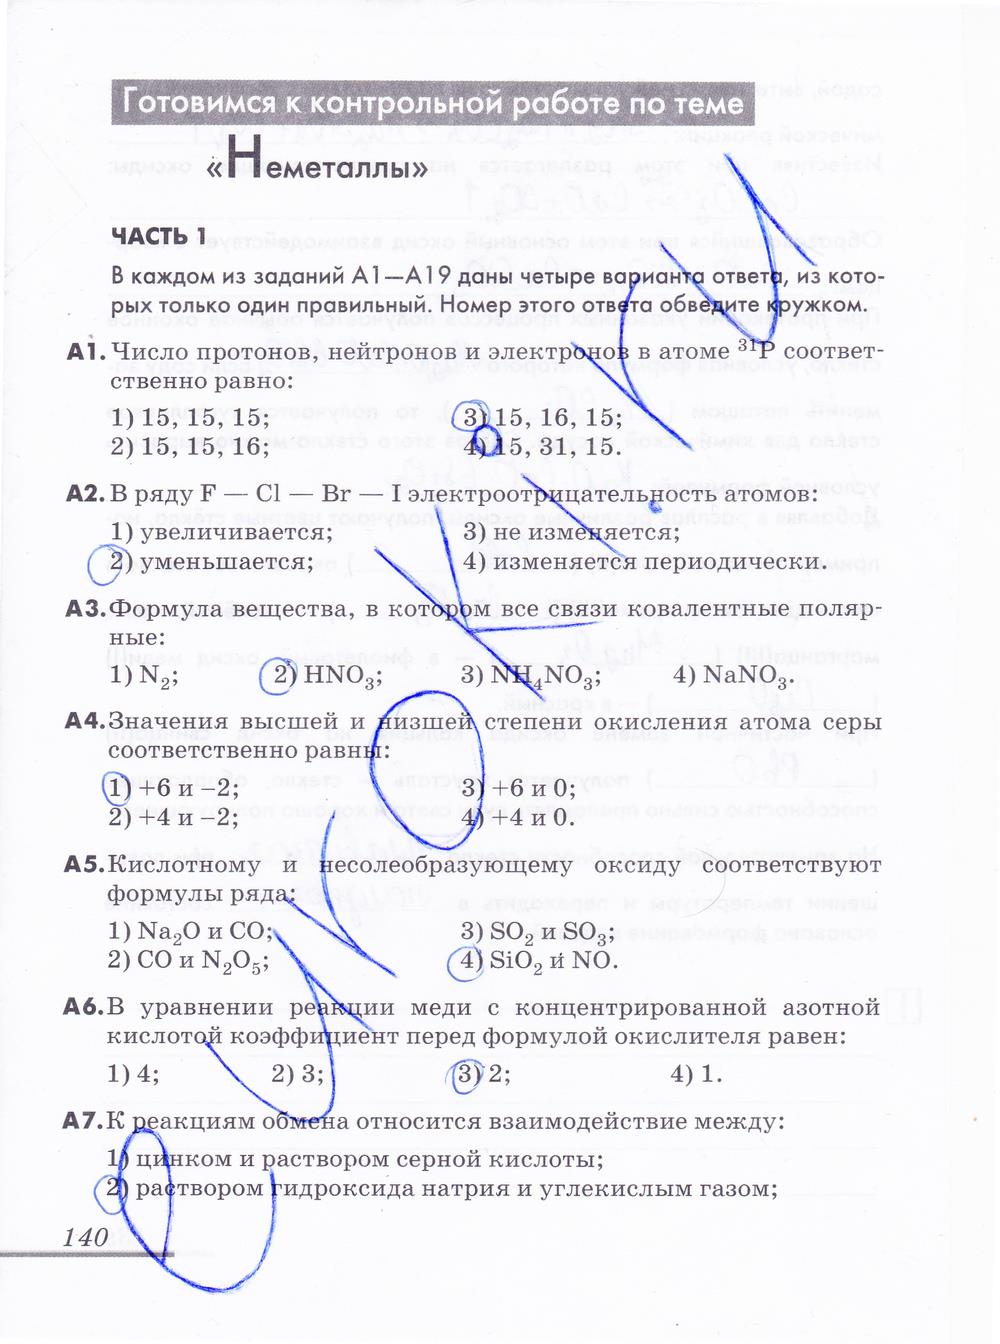 гдз 9 класс рабочая тетрадь страница 140 химия Еремин, Дроздов